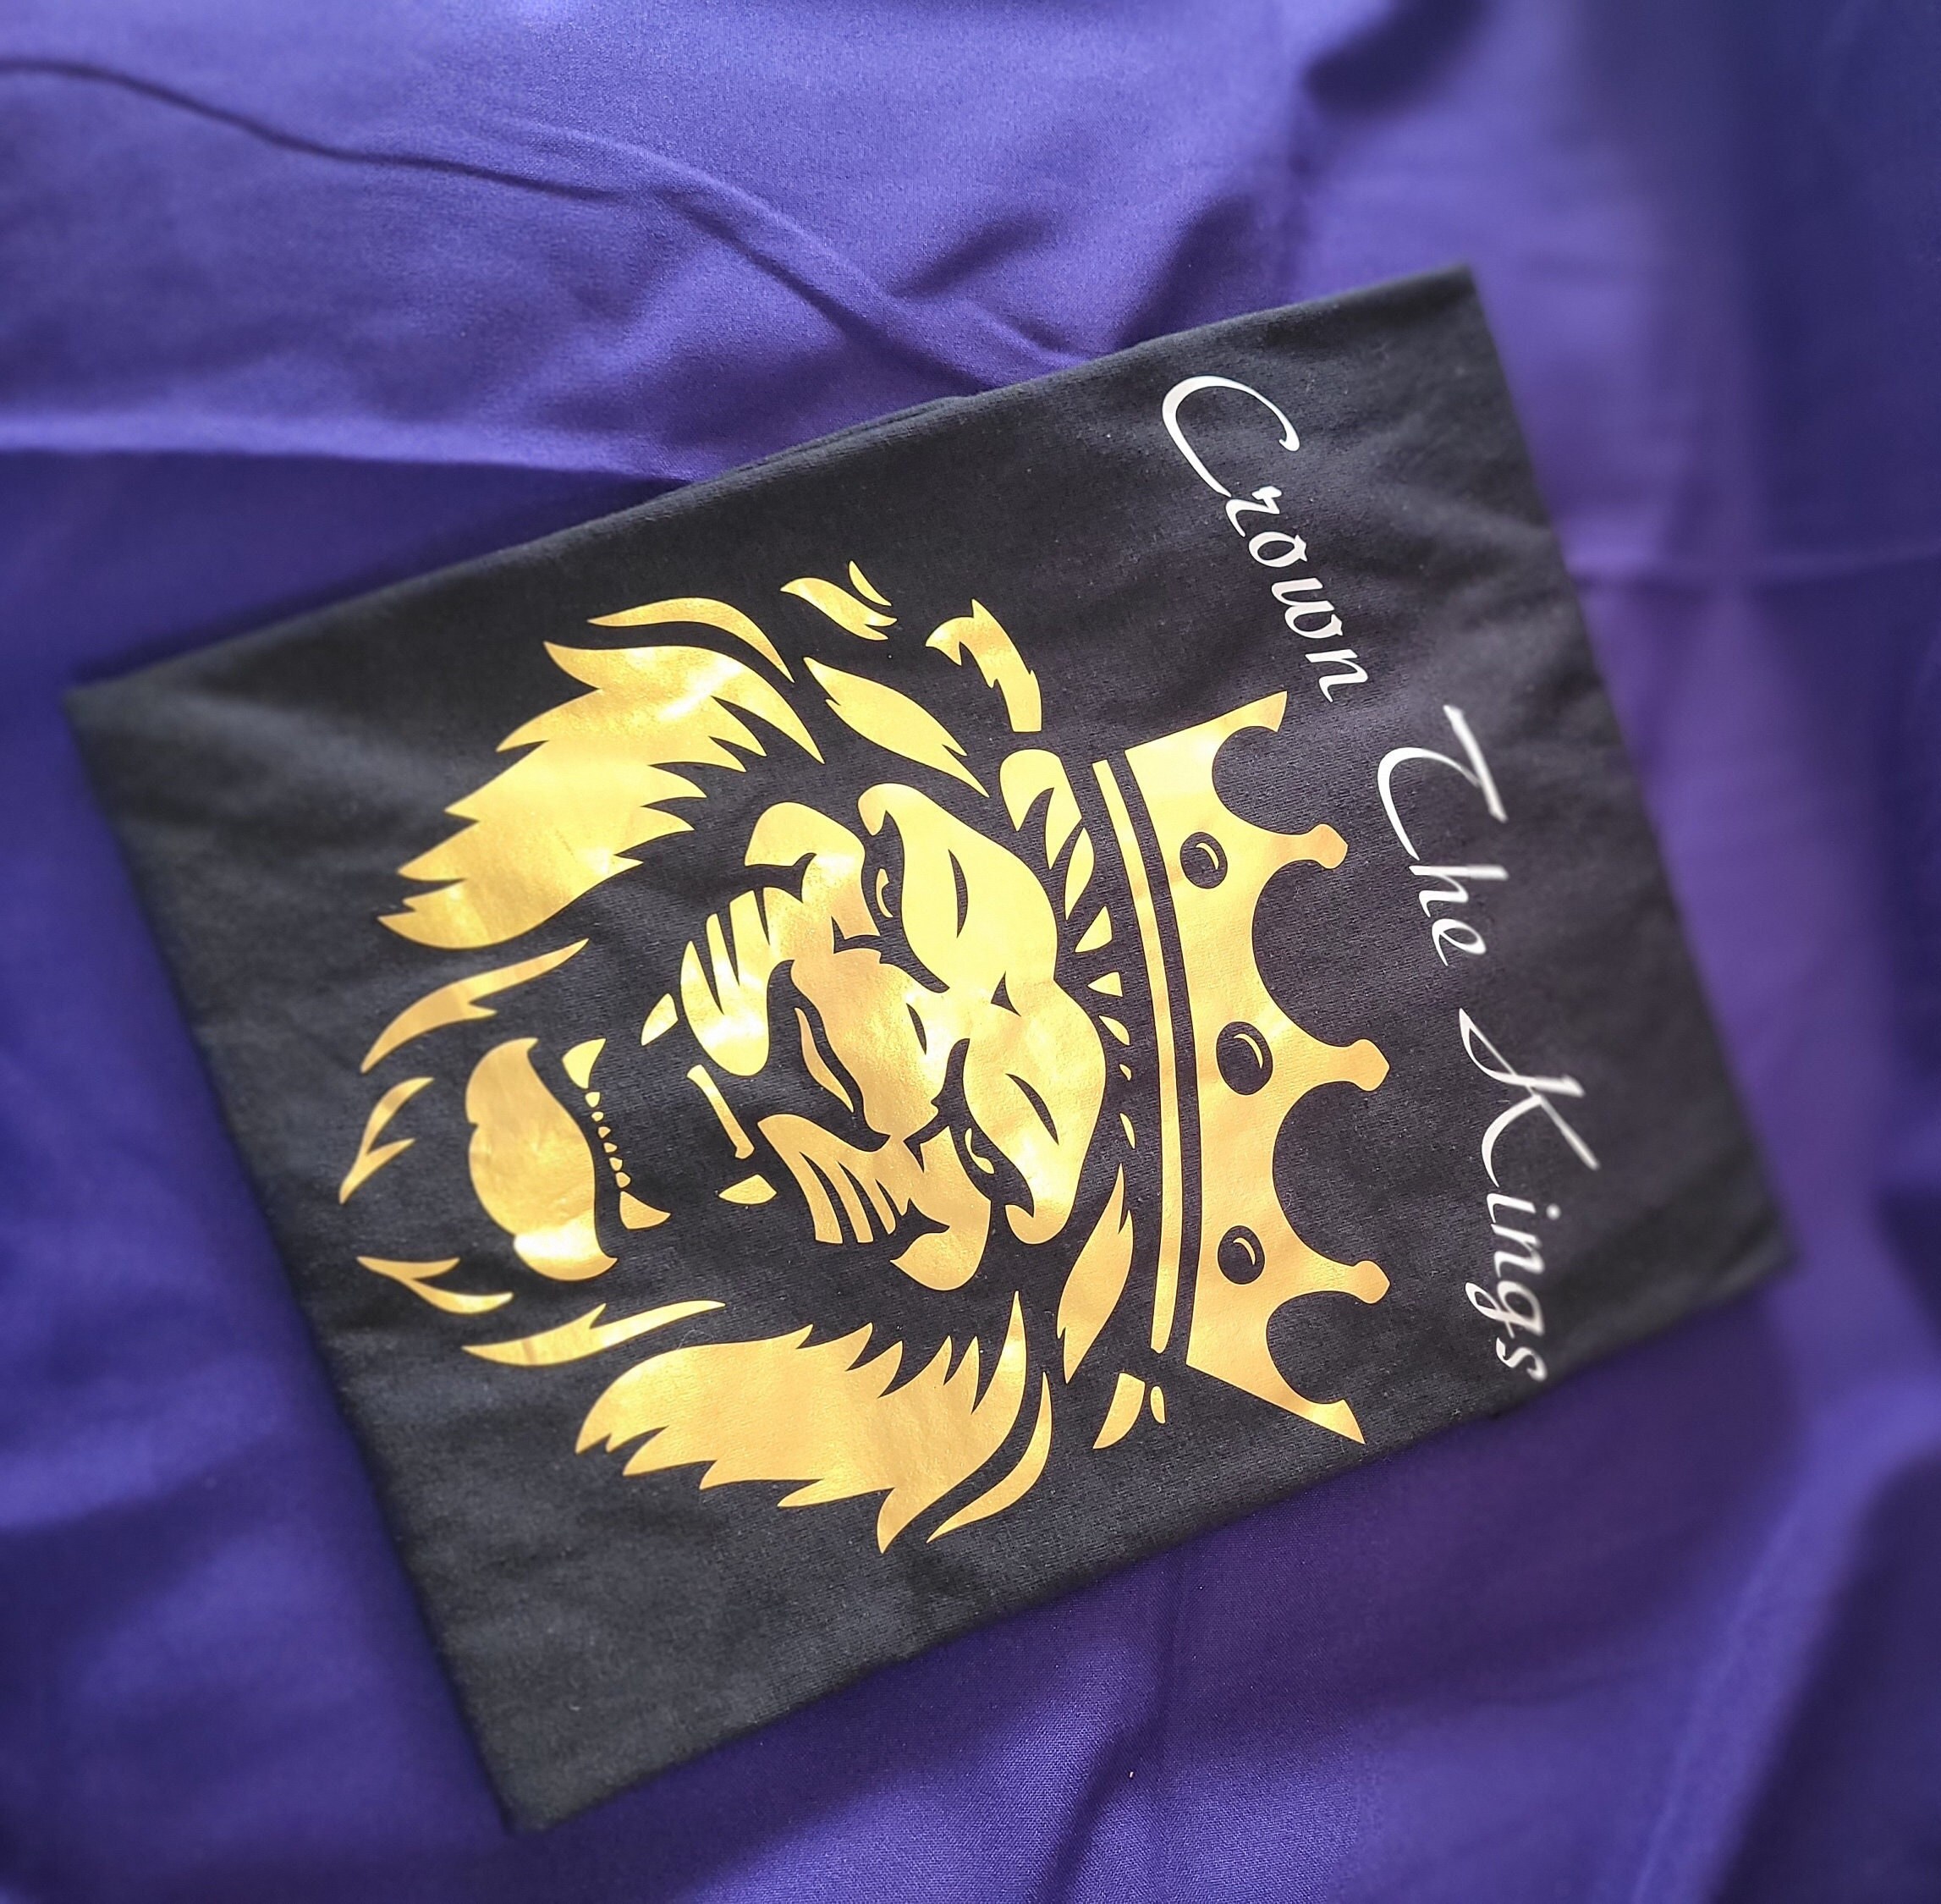 VTG LA Kings Starter Jacket Sz L Crown Patch Purple Gold Made In